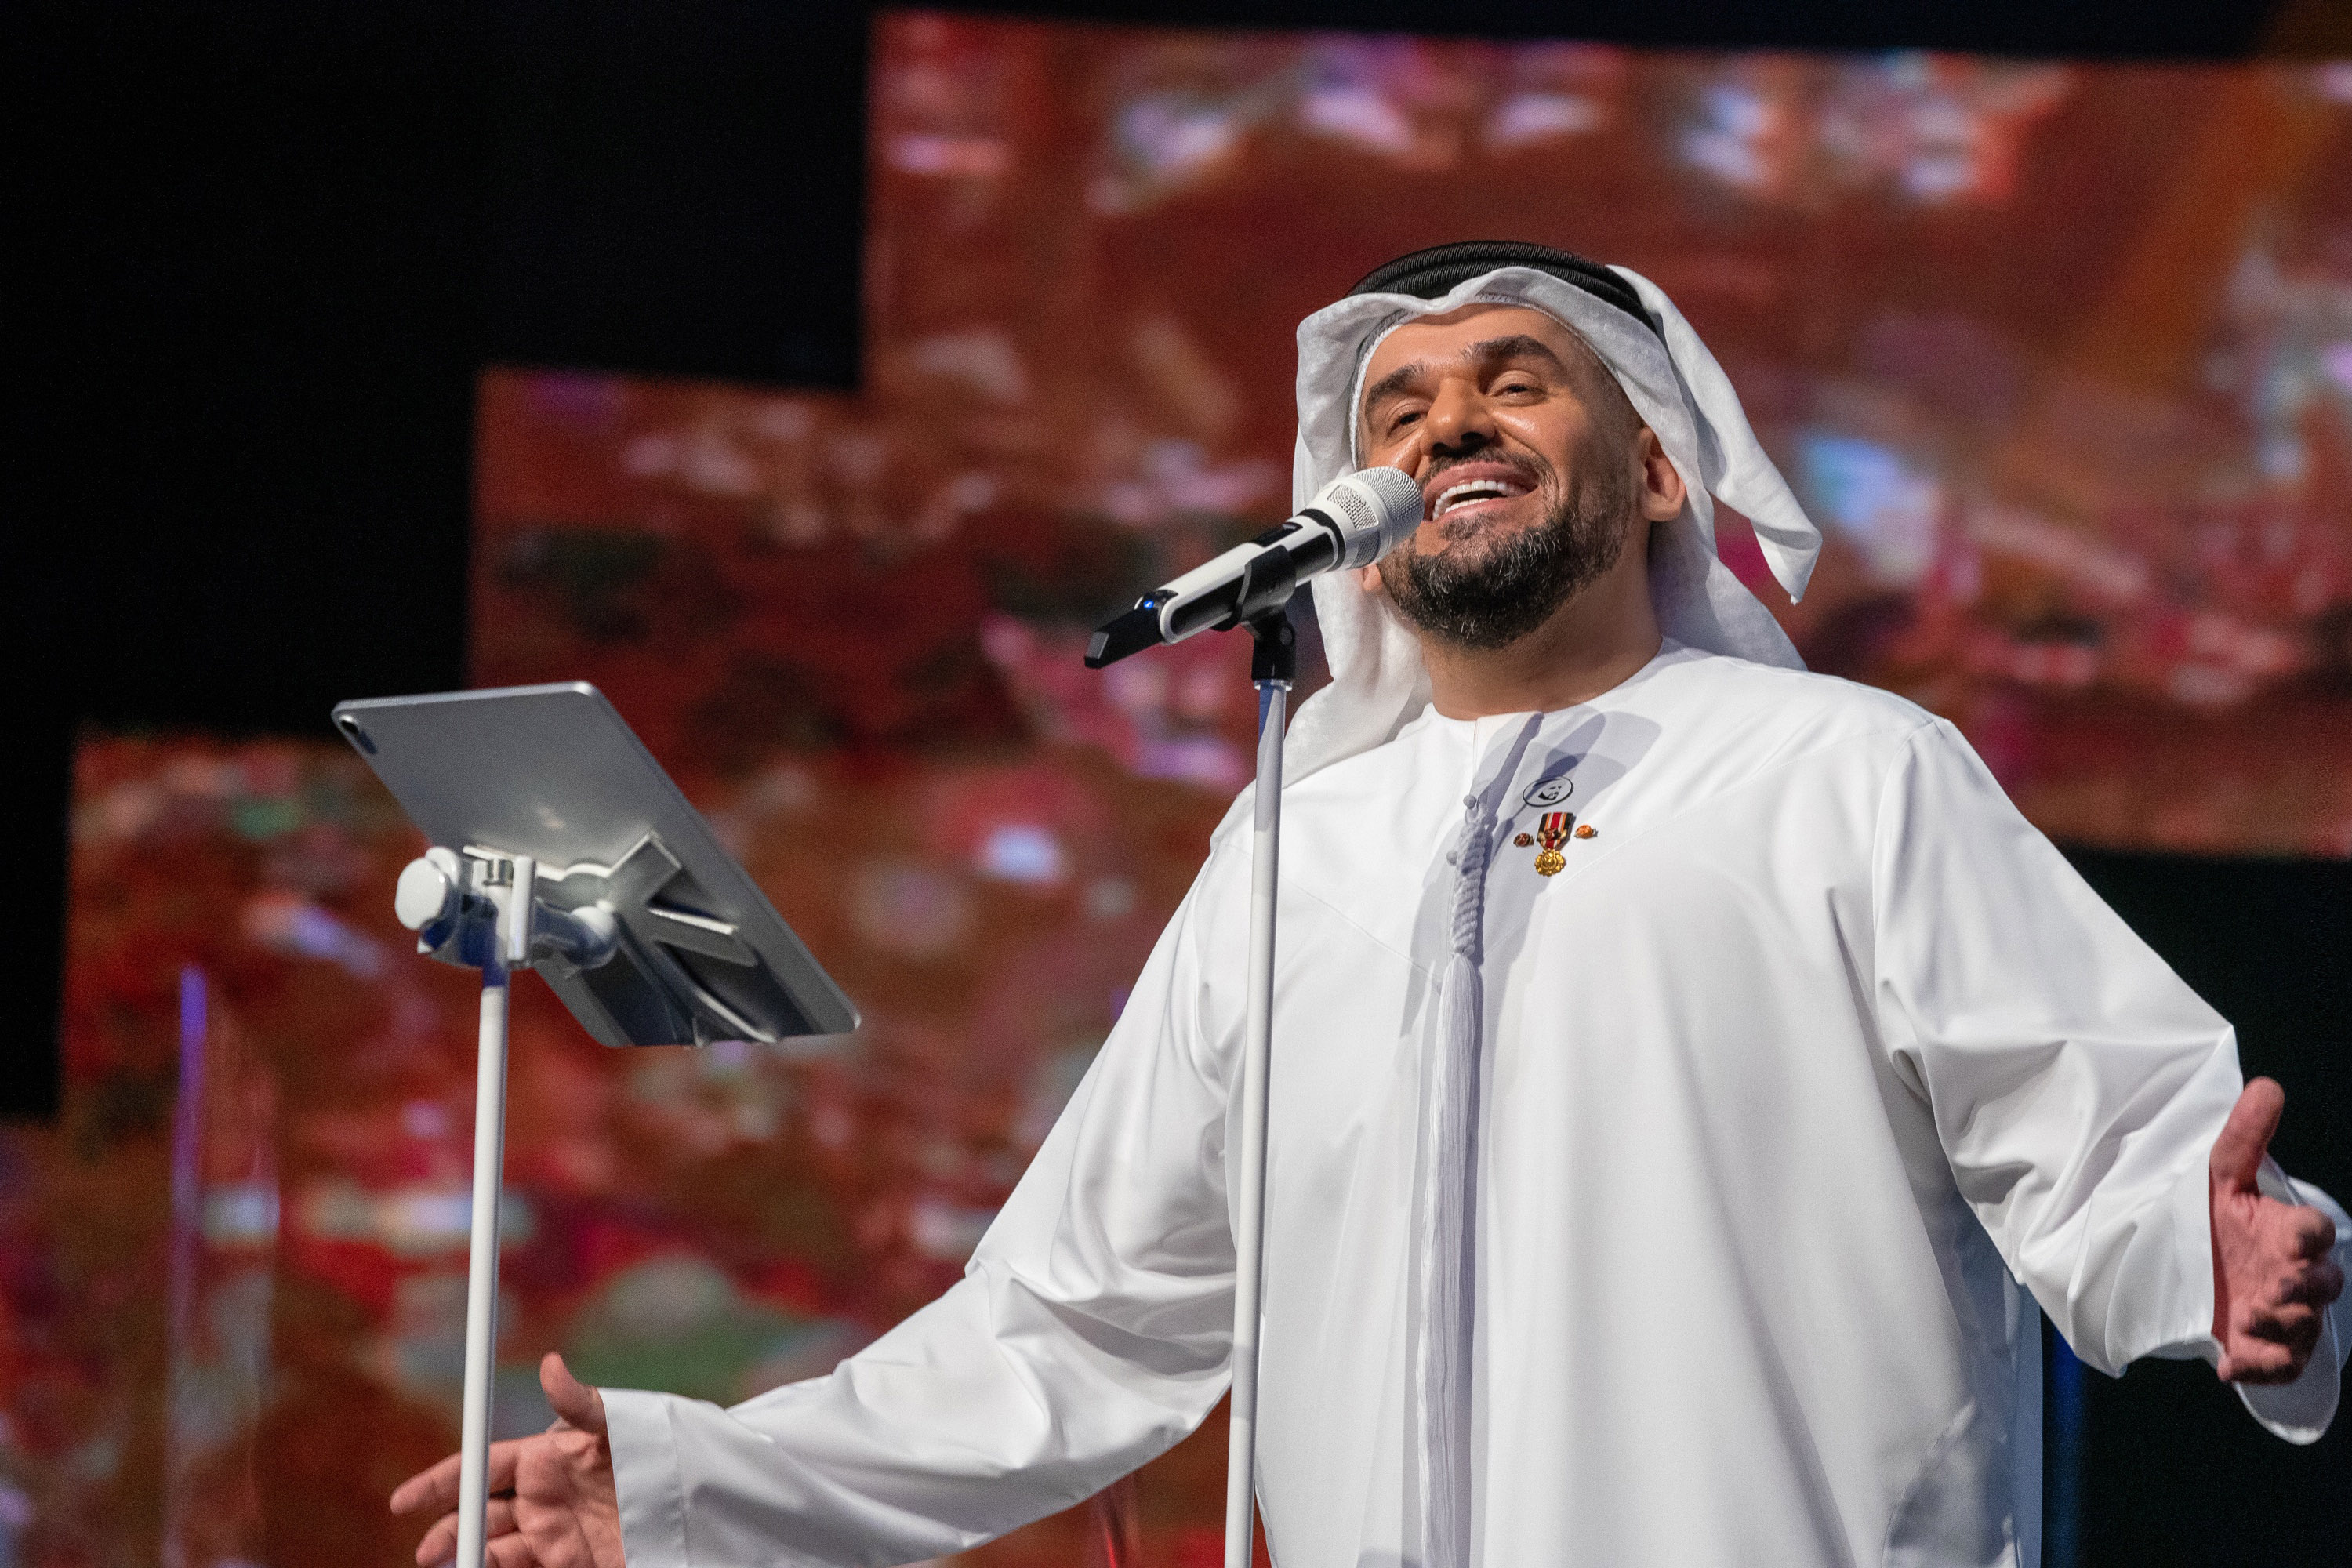 حسين الجسمي يعايد الجمهور وينثر الأمل والفرح حول العالم ببث حي من أبوظبي